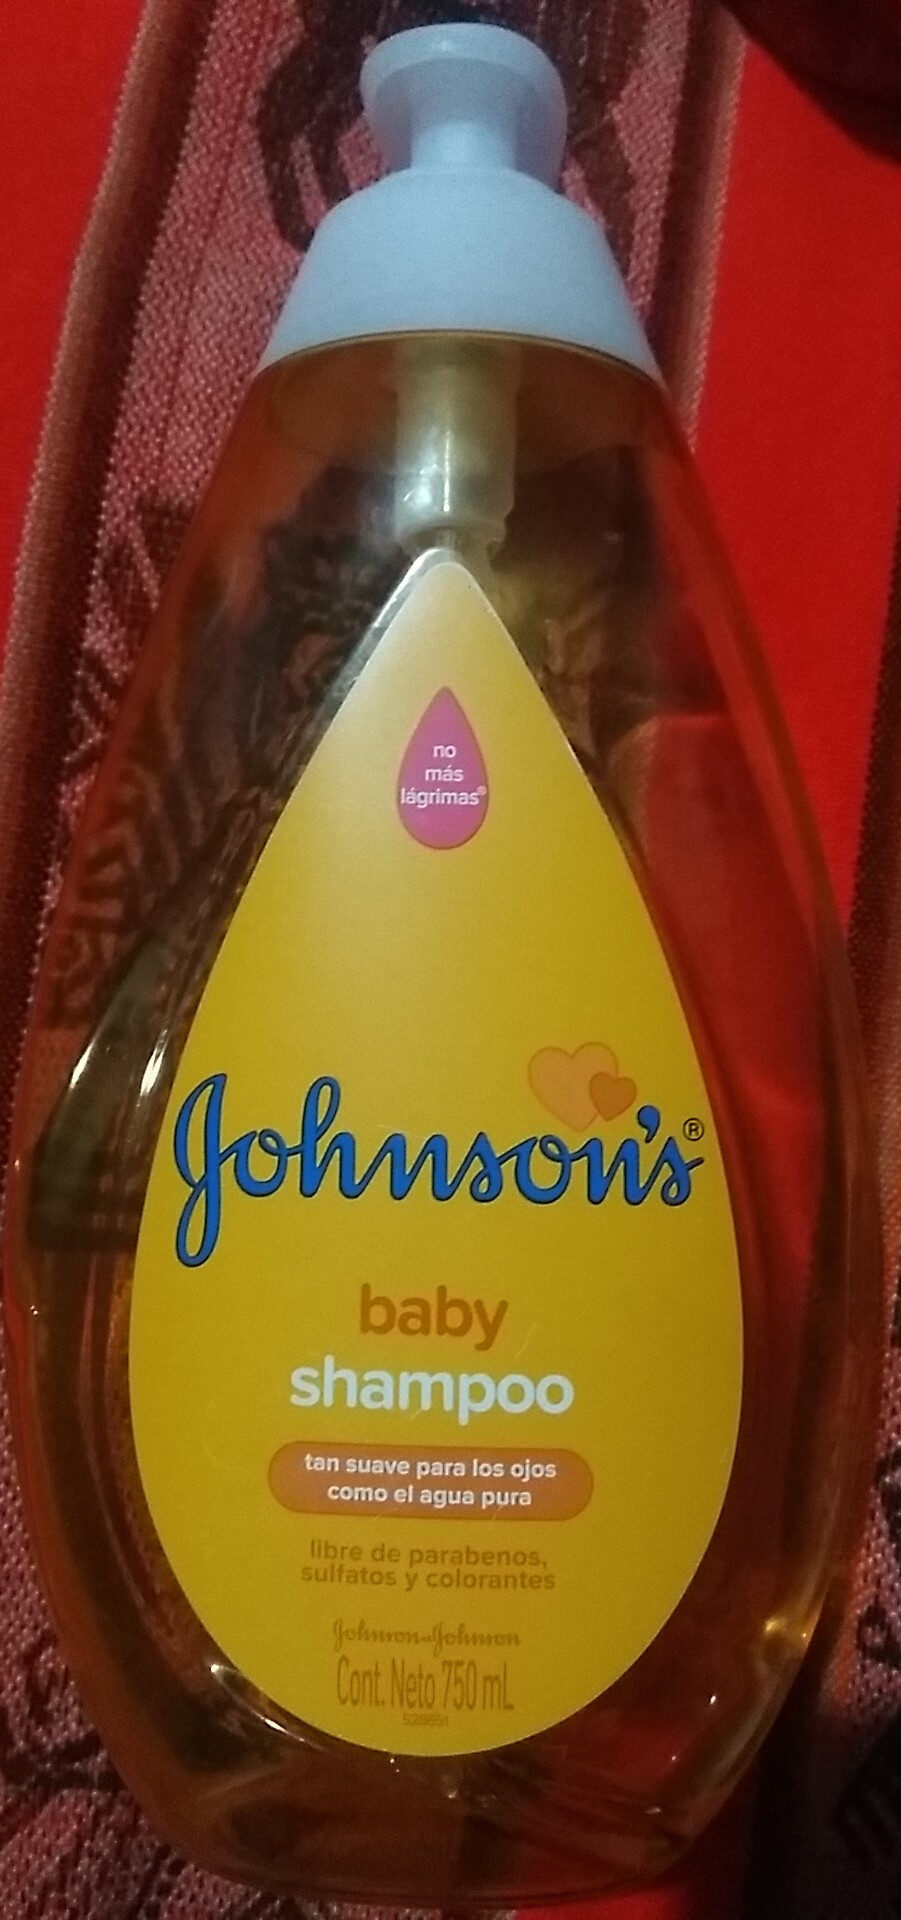 Baby Shampoo - Tuote - es